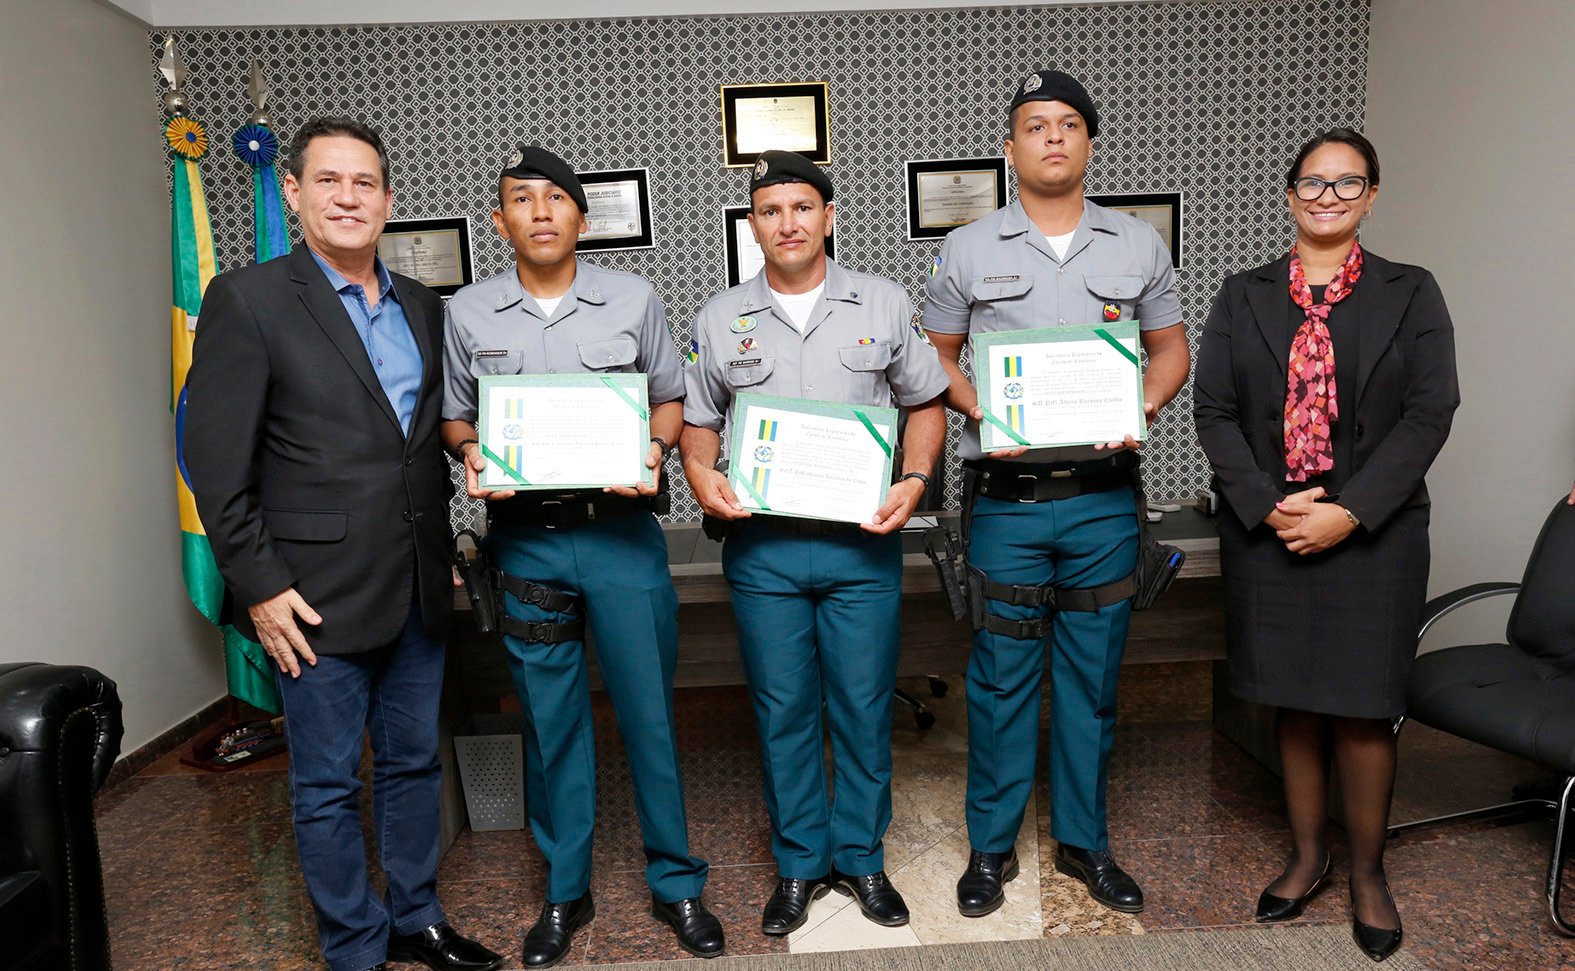 Maurão de Carvalho entrega homenagem a policiais militares de Monte Negro